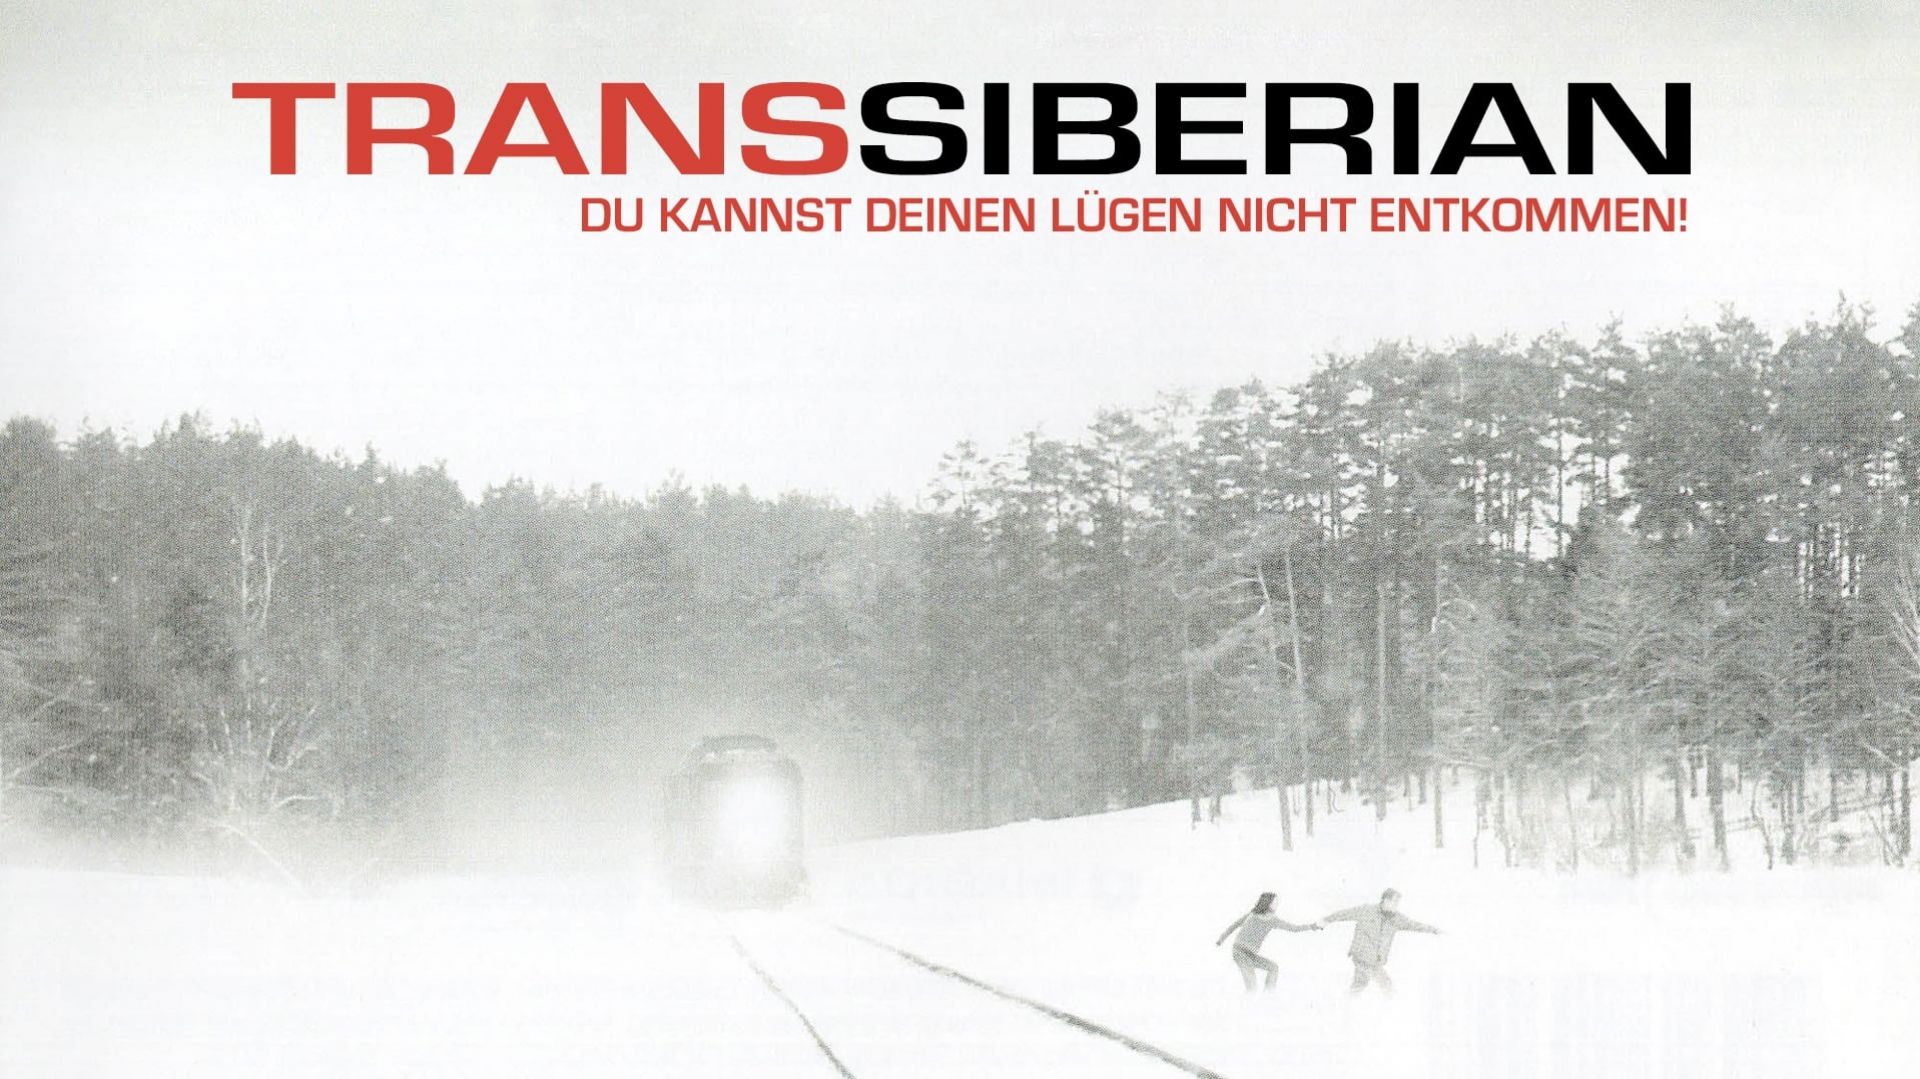 دانلود فیلم Transsiberian 2008